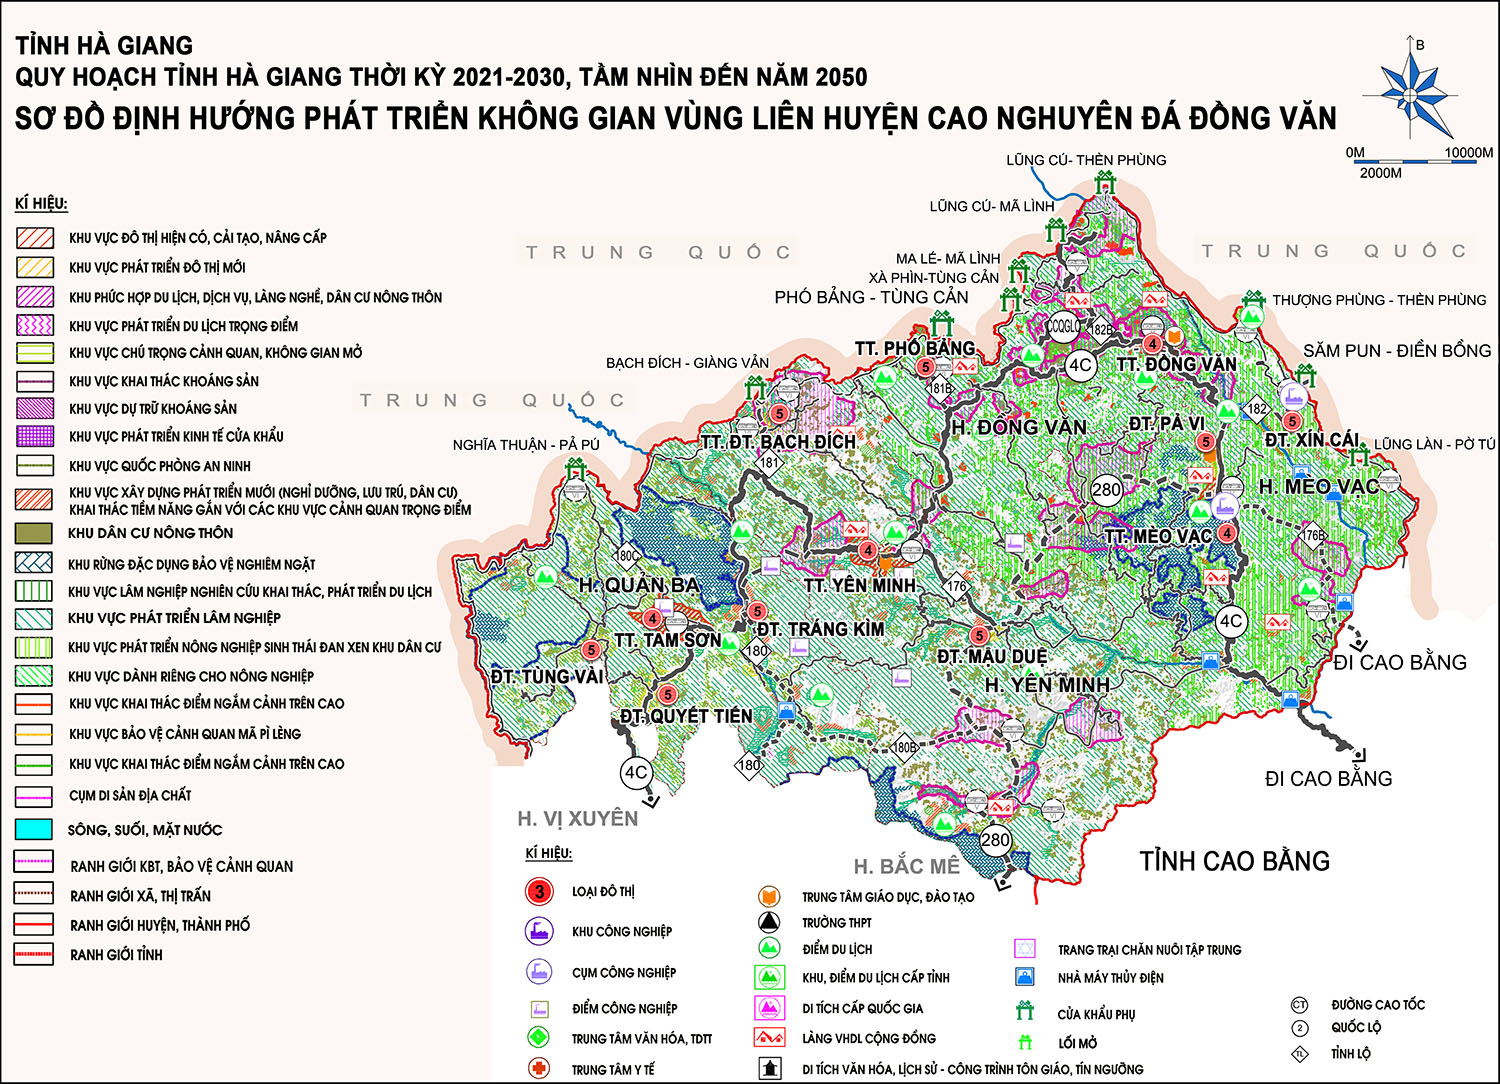 Quy hoạch vùng liên huyện Cao nguyên đá Đồng Văn (tiểu vùng cao núi đá phía Bắc) tỉnh Hà Giang